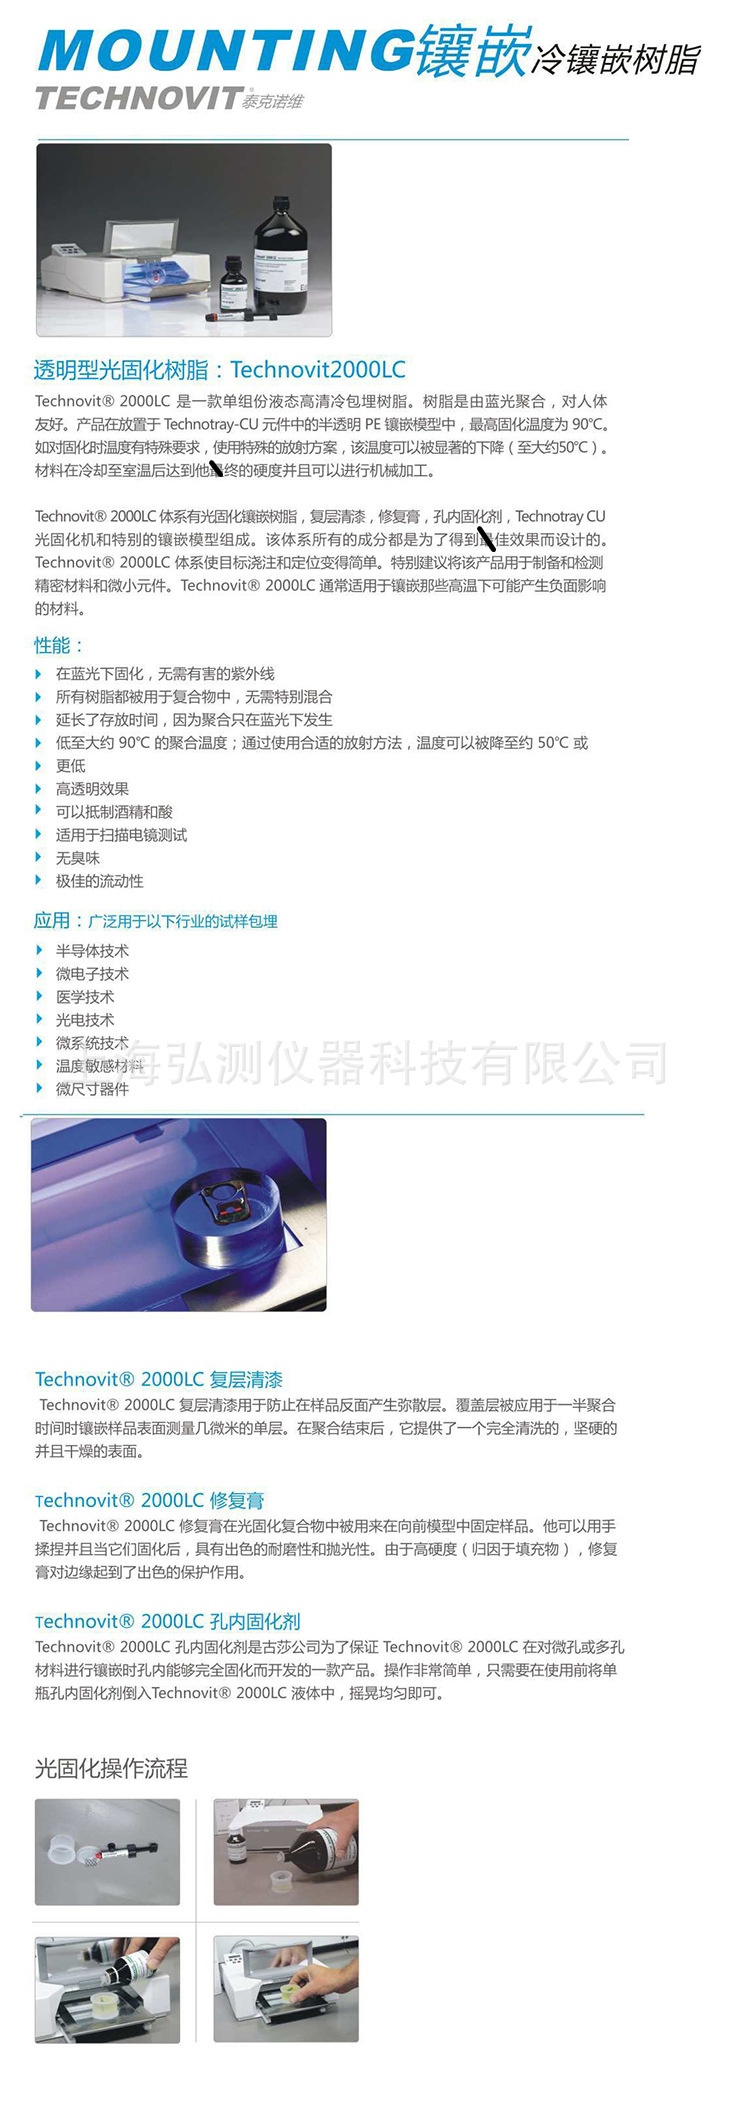 光固化树脂 Technovit 2000LC_副本_副本.jpg